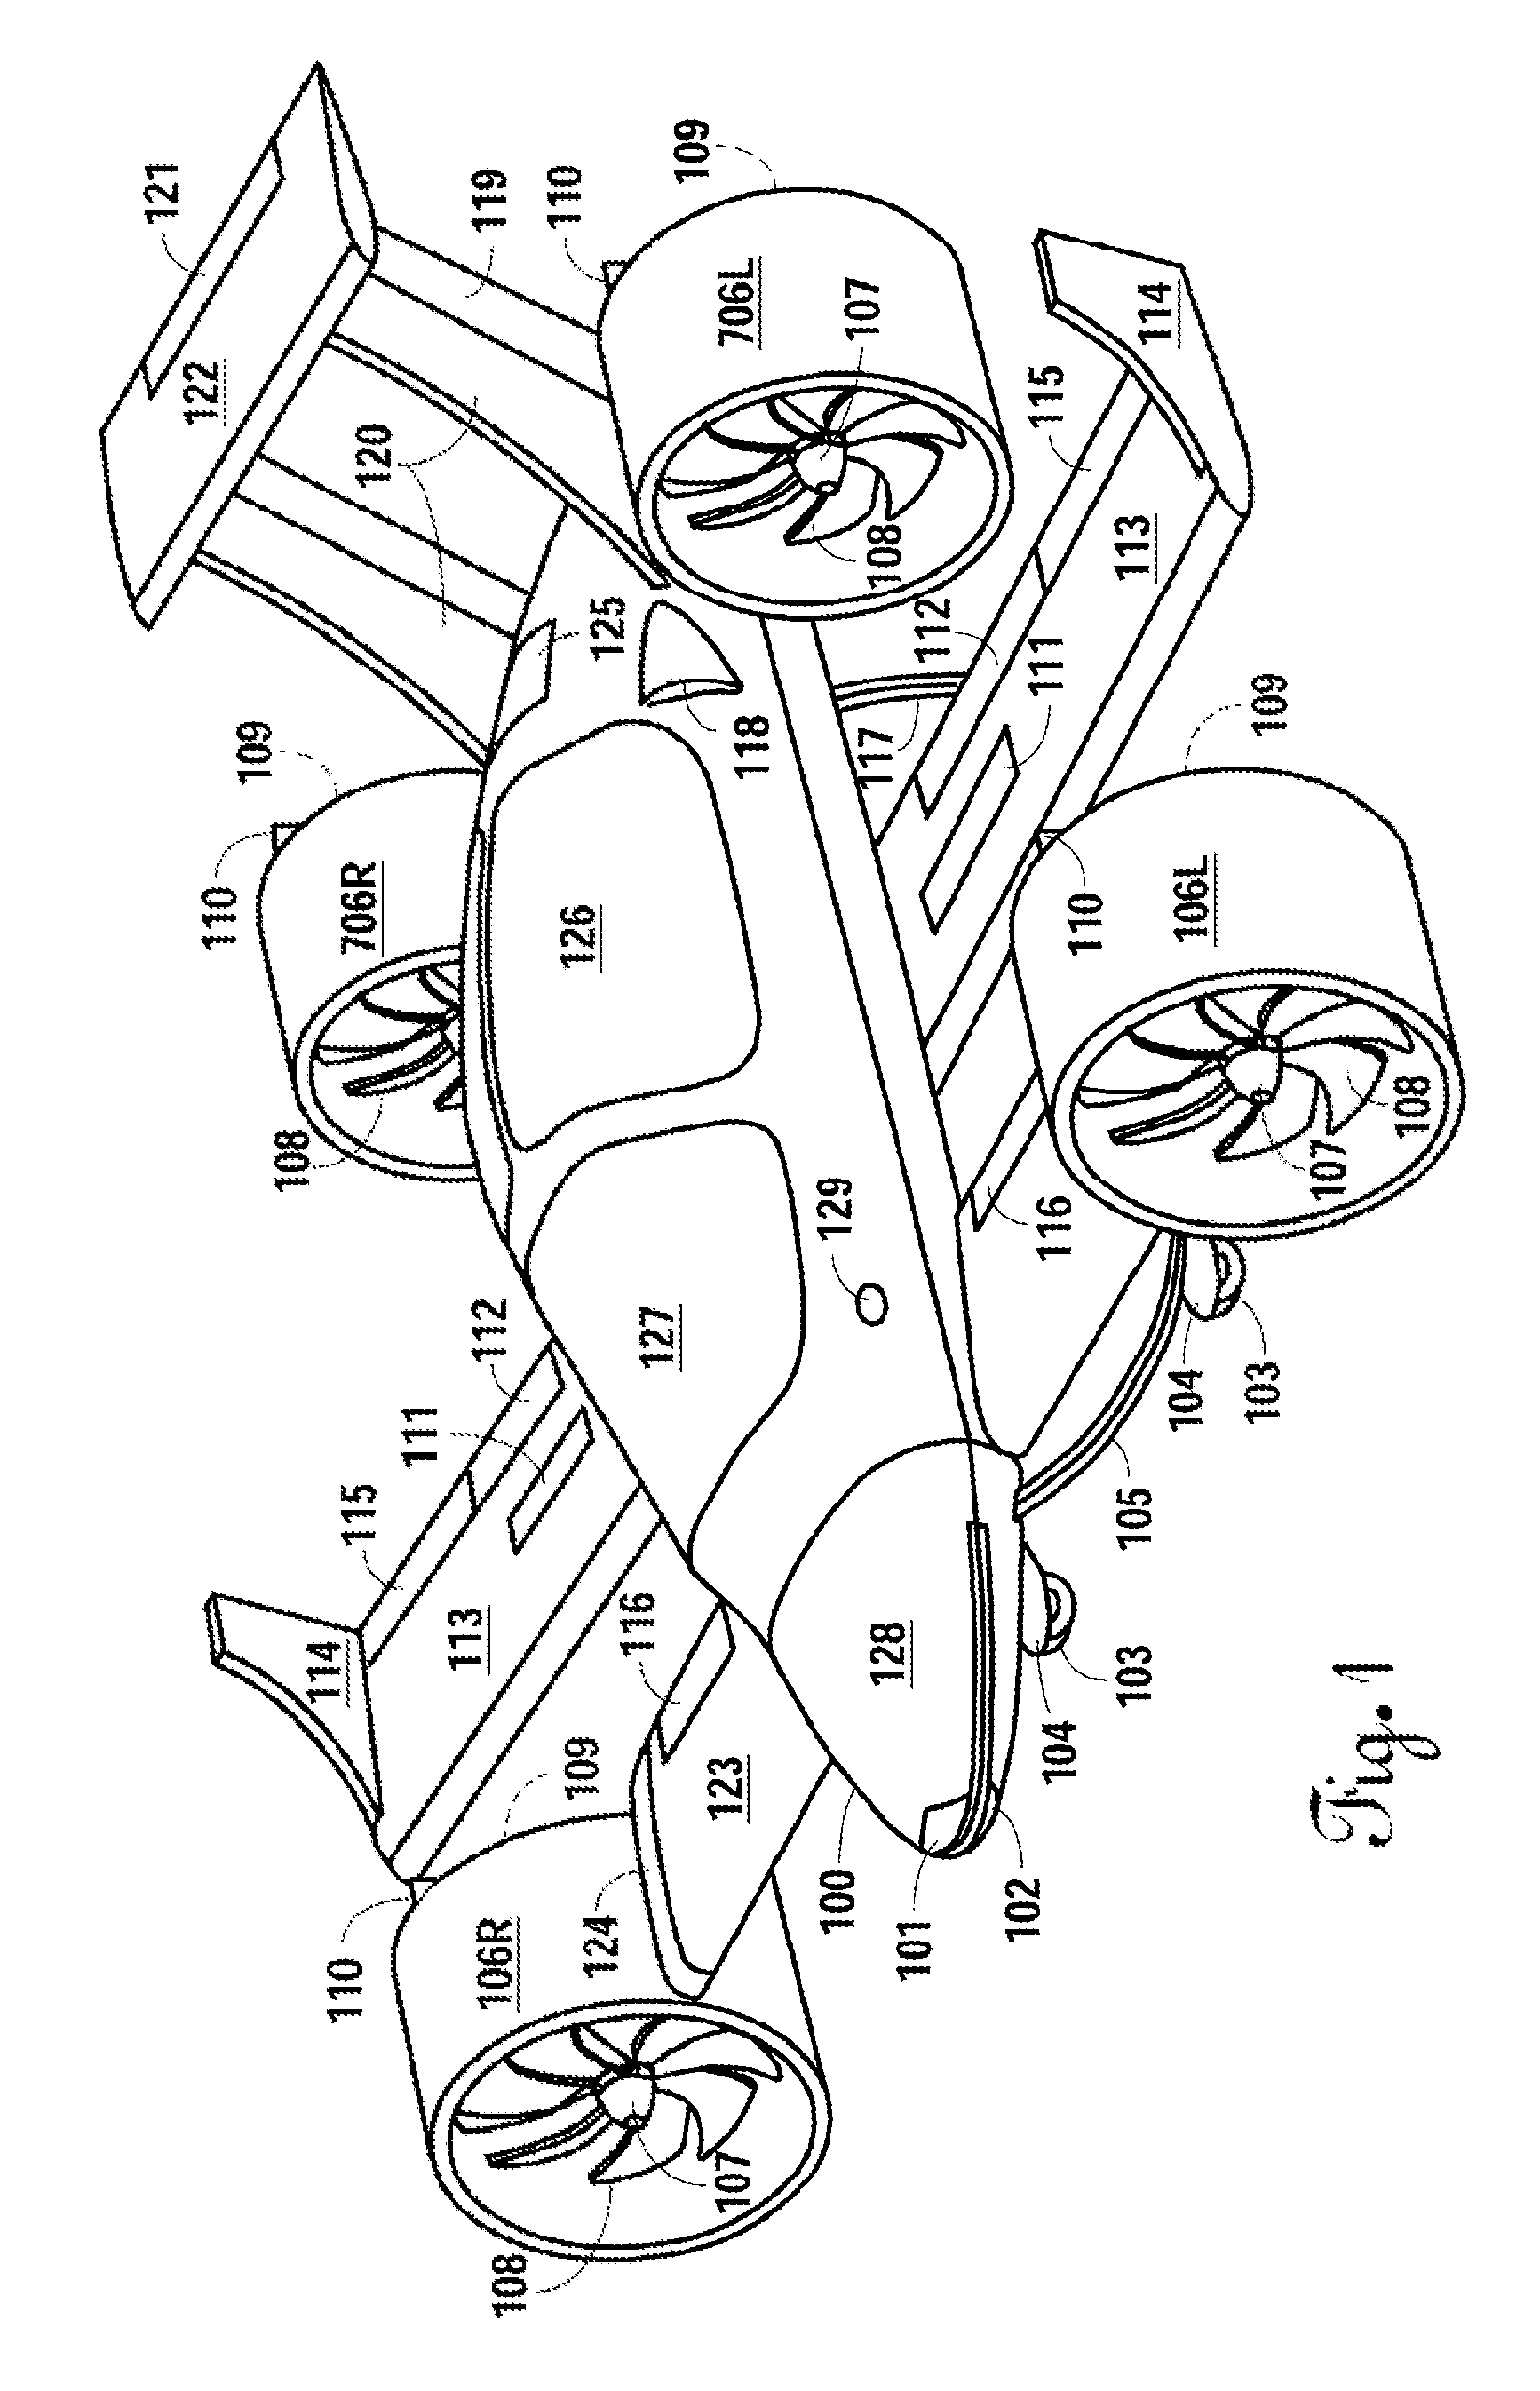 Aircraft with freewheeling engine